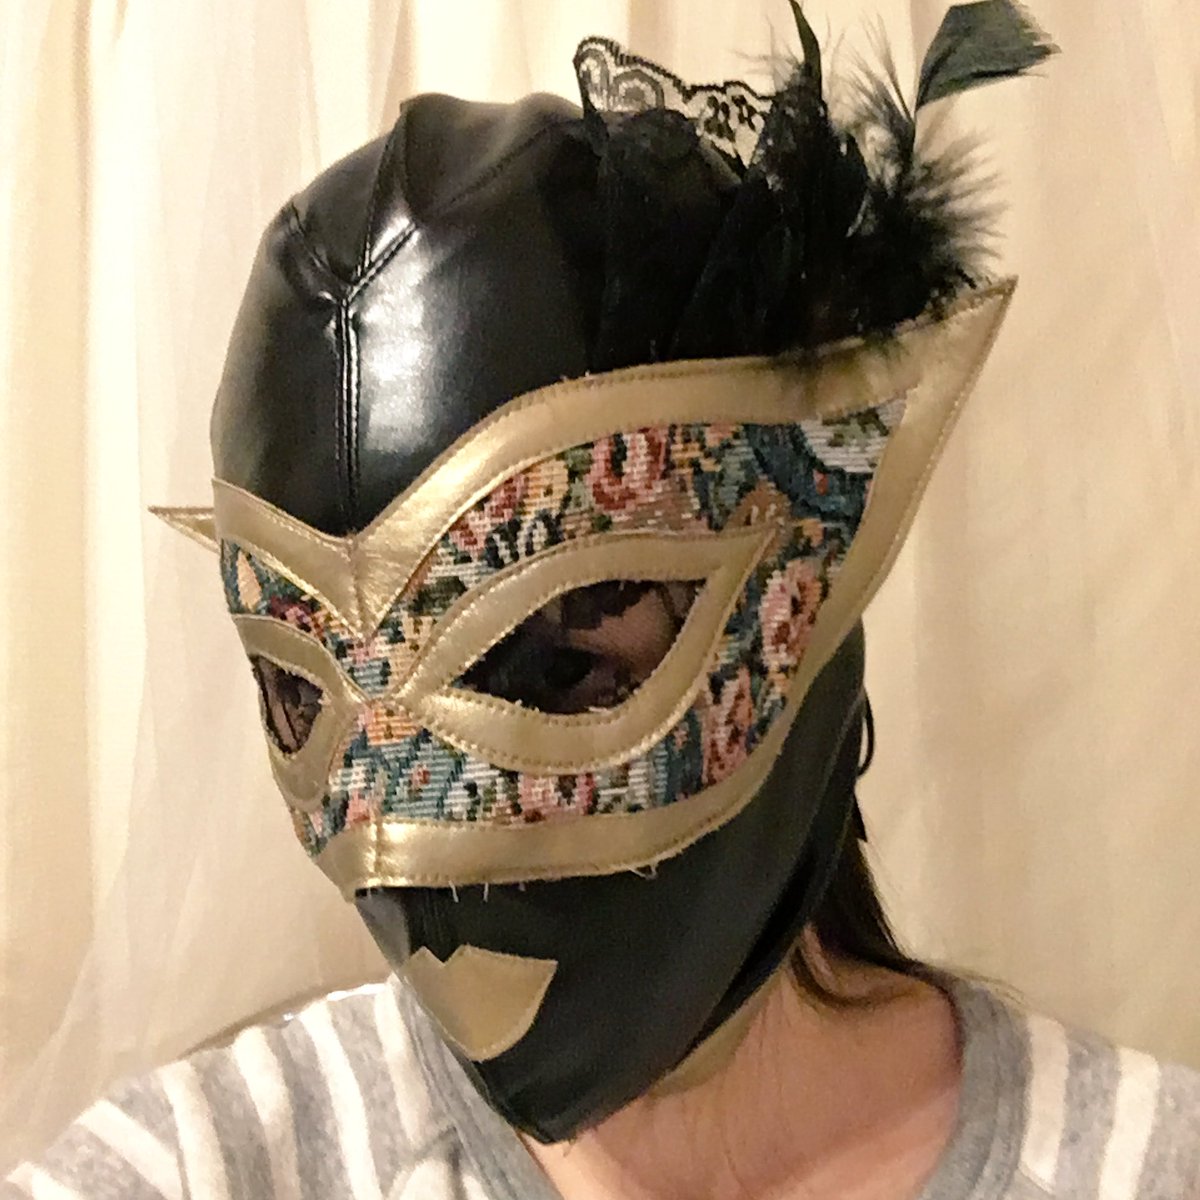 The Creator アスカ En Twitter 完成しました わたしのベネチアンマスク風プロレスマスク 出来上がってふと思う 全くルチャ感ない ほんで こんなもん被って試合観るかね そもそも見えづらい 素人がマスクを作るとどうなるかを検証中 手作りマスク